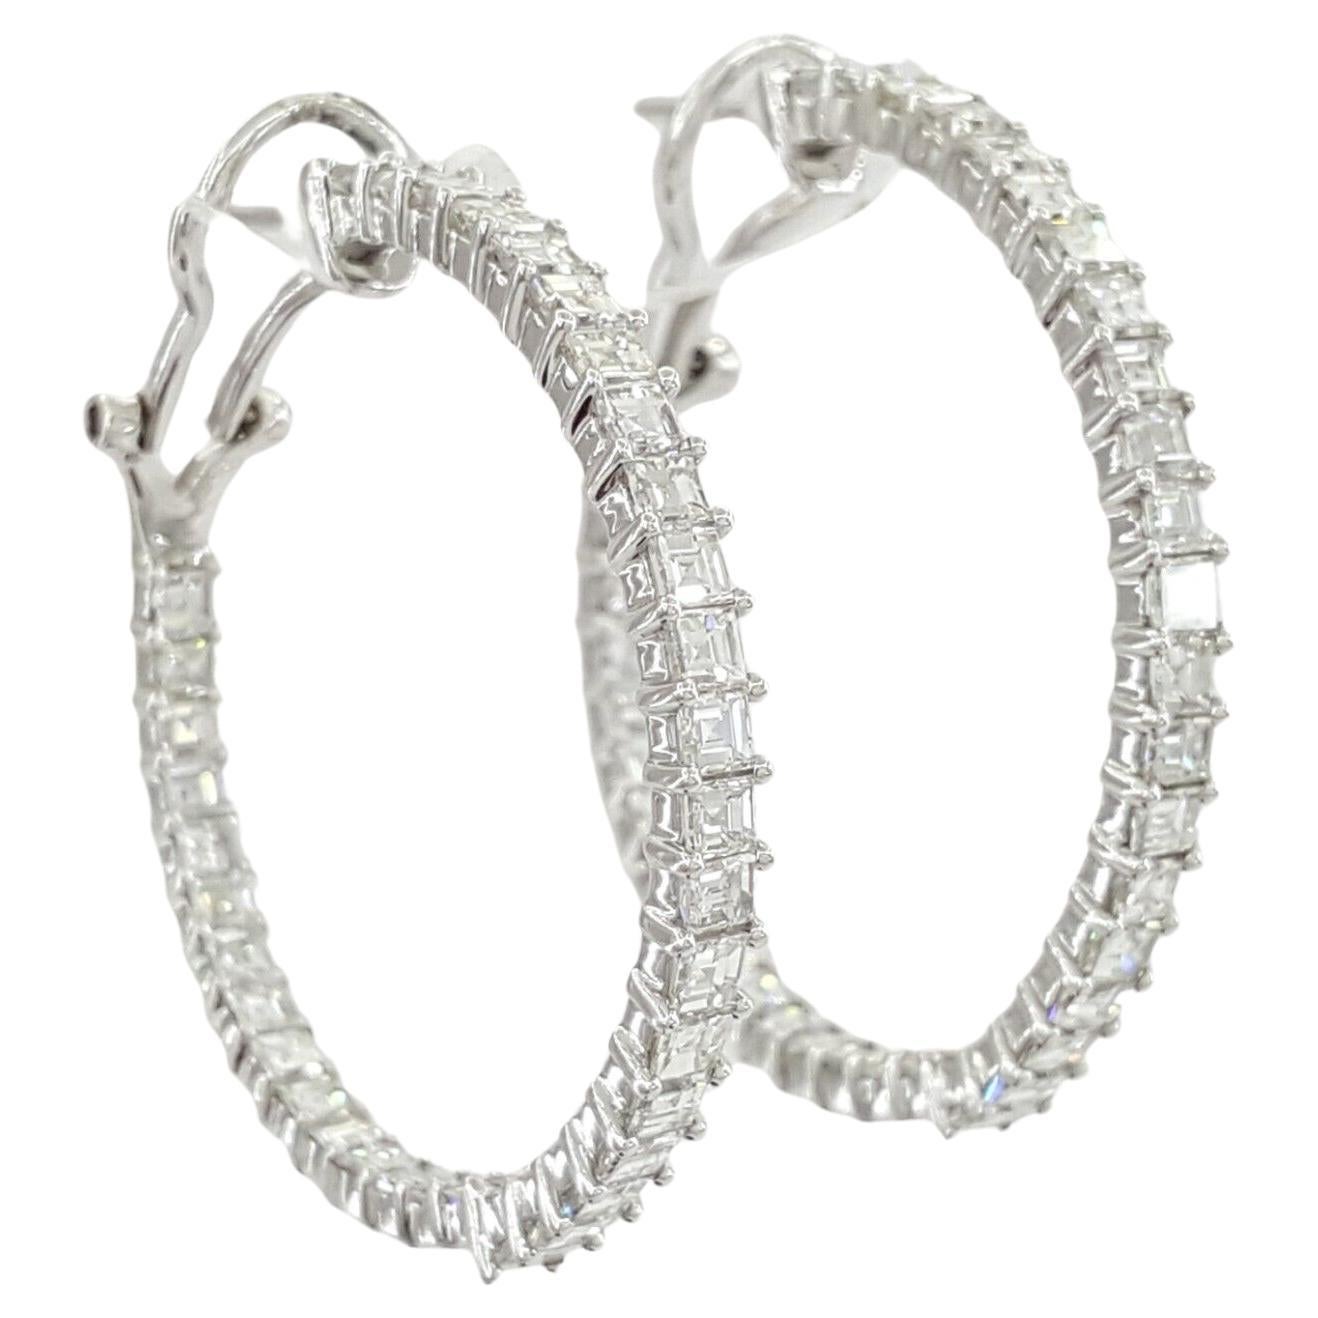 5 Carat Asscher Diamond Cut Hoop Earrings